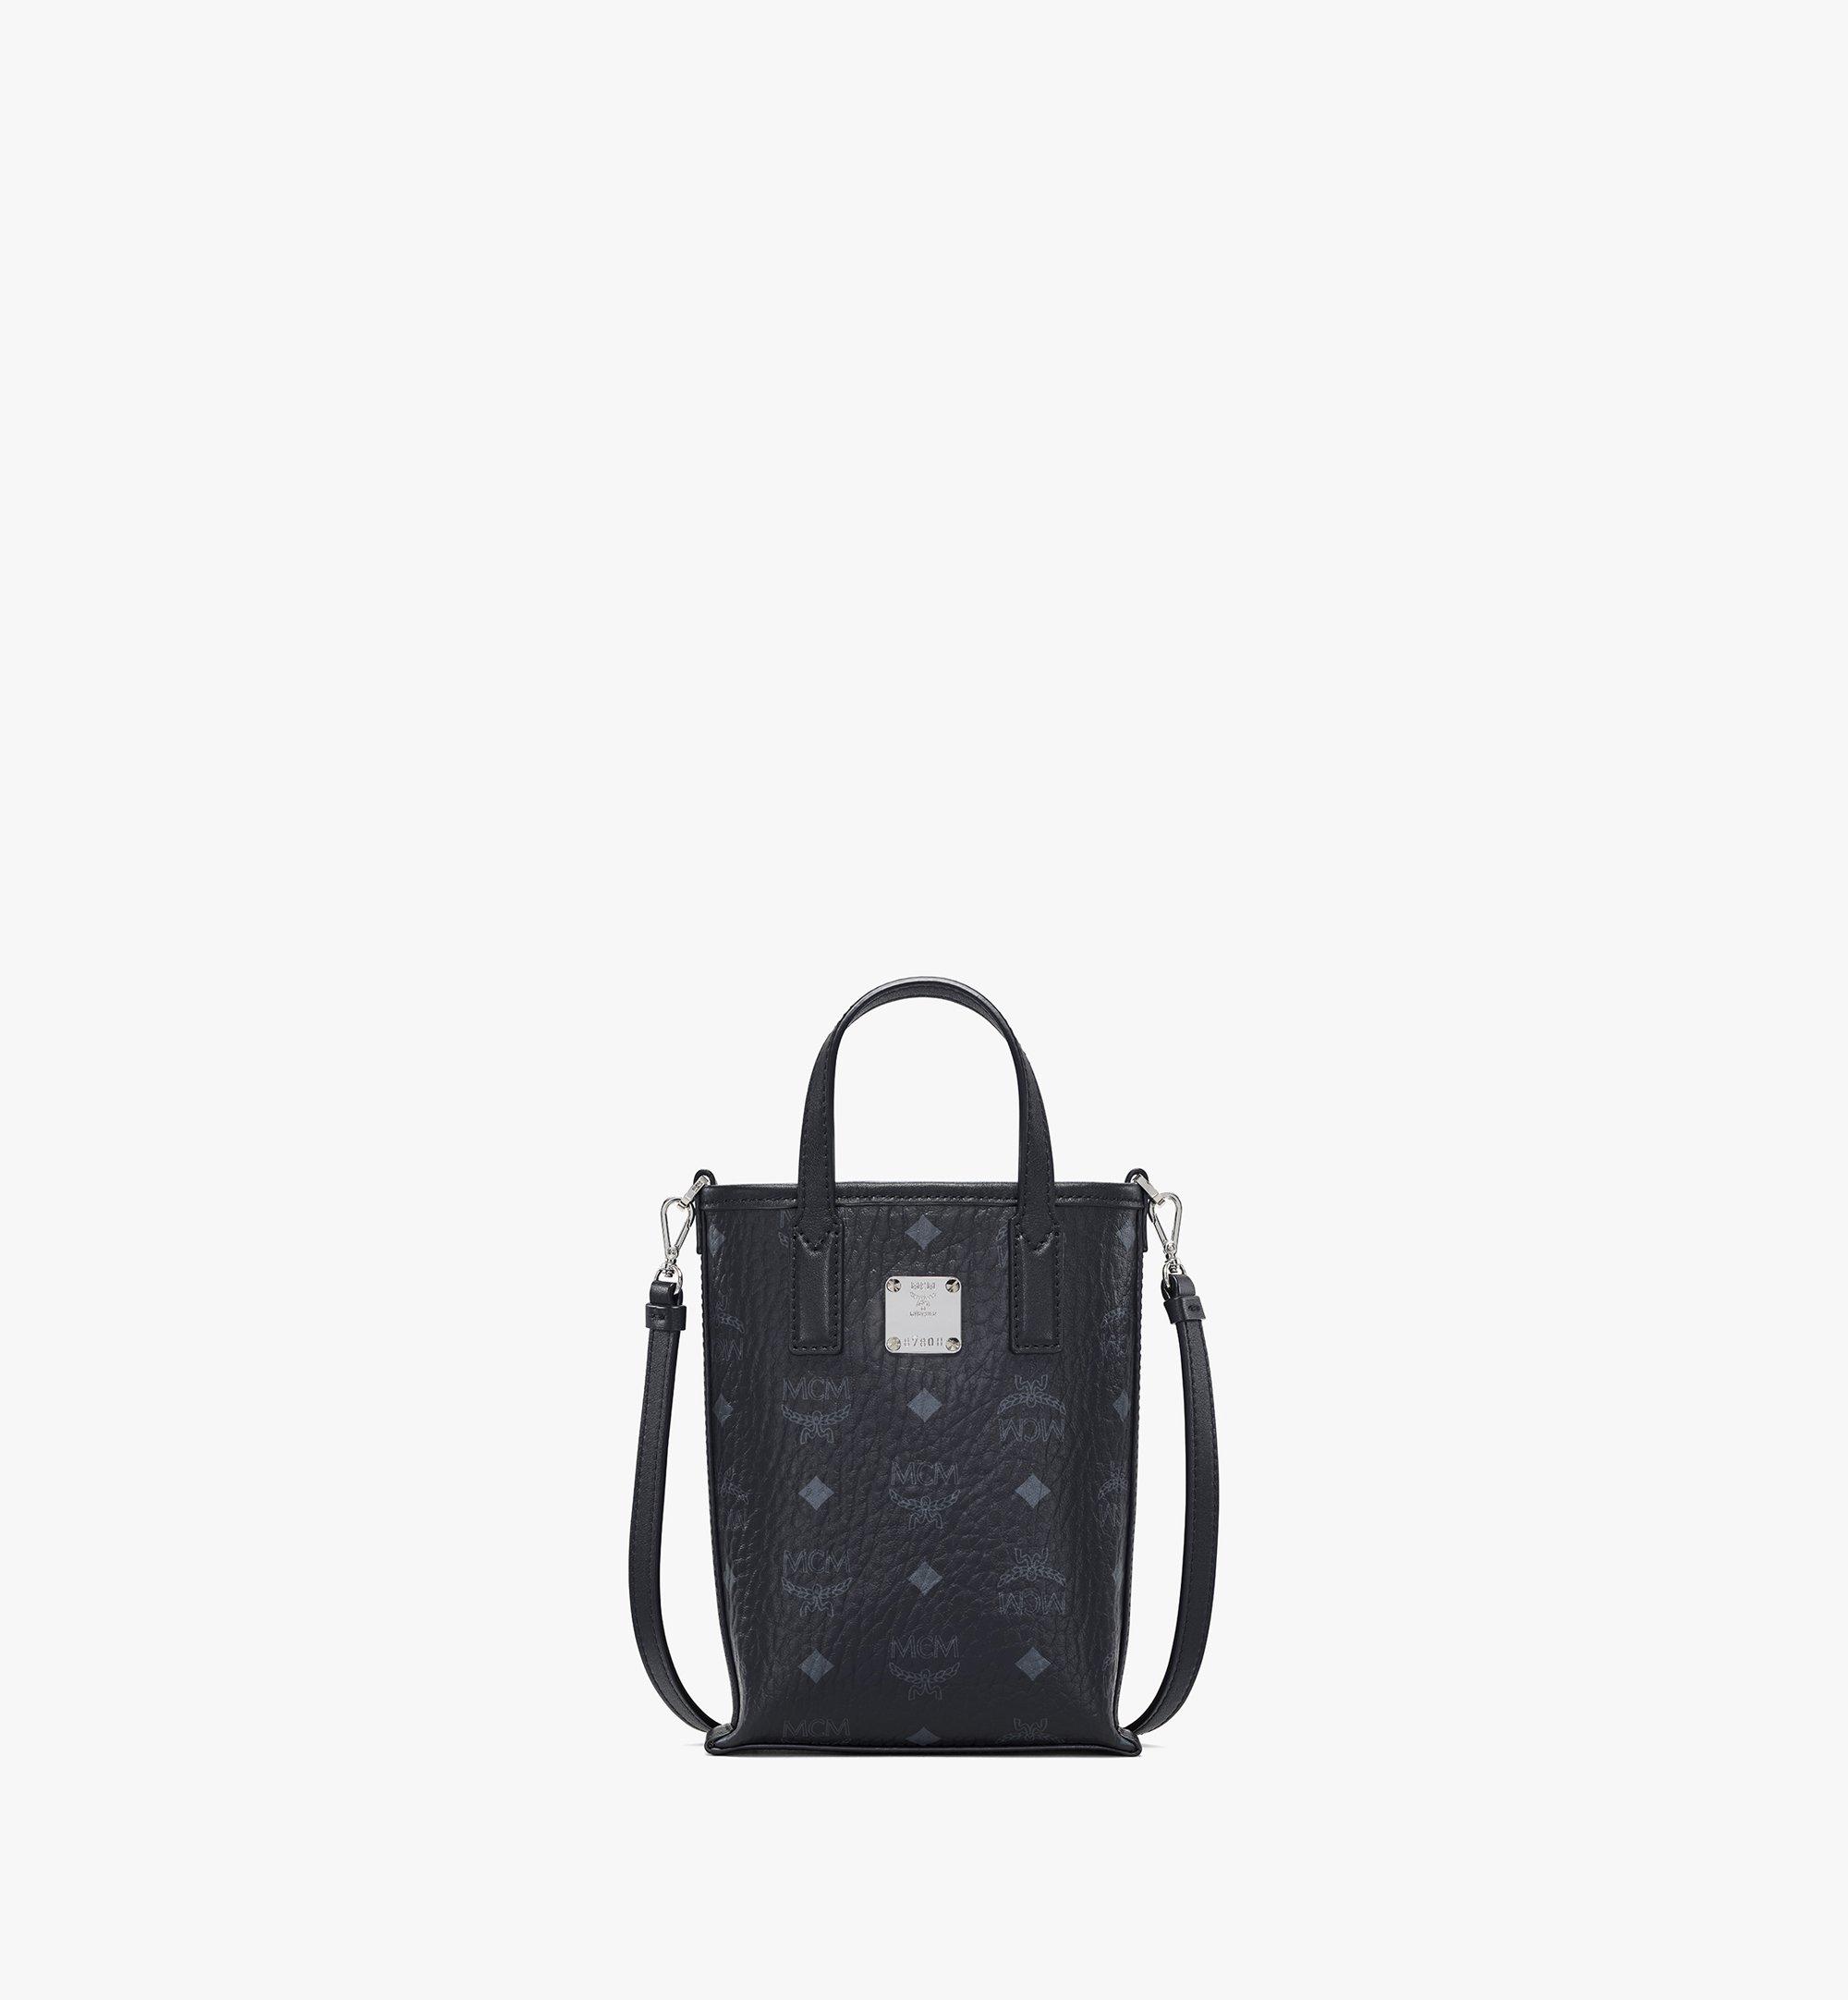 MCM: mini bag for woman - Pink  Mcm mini bag MWBBAER01 online at